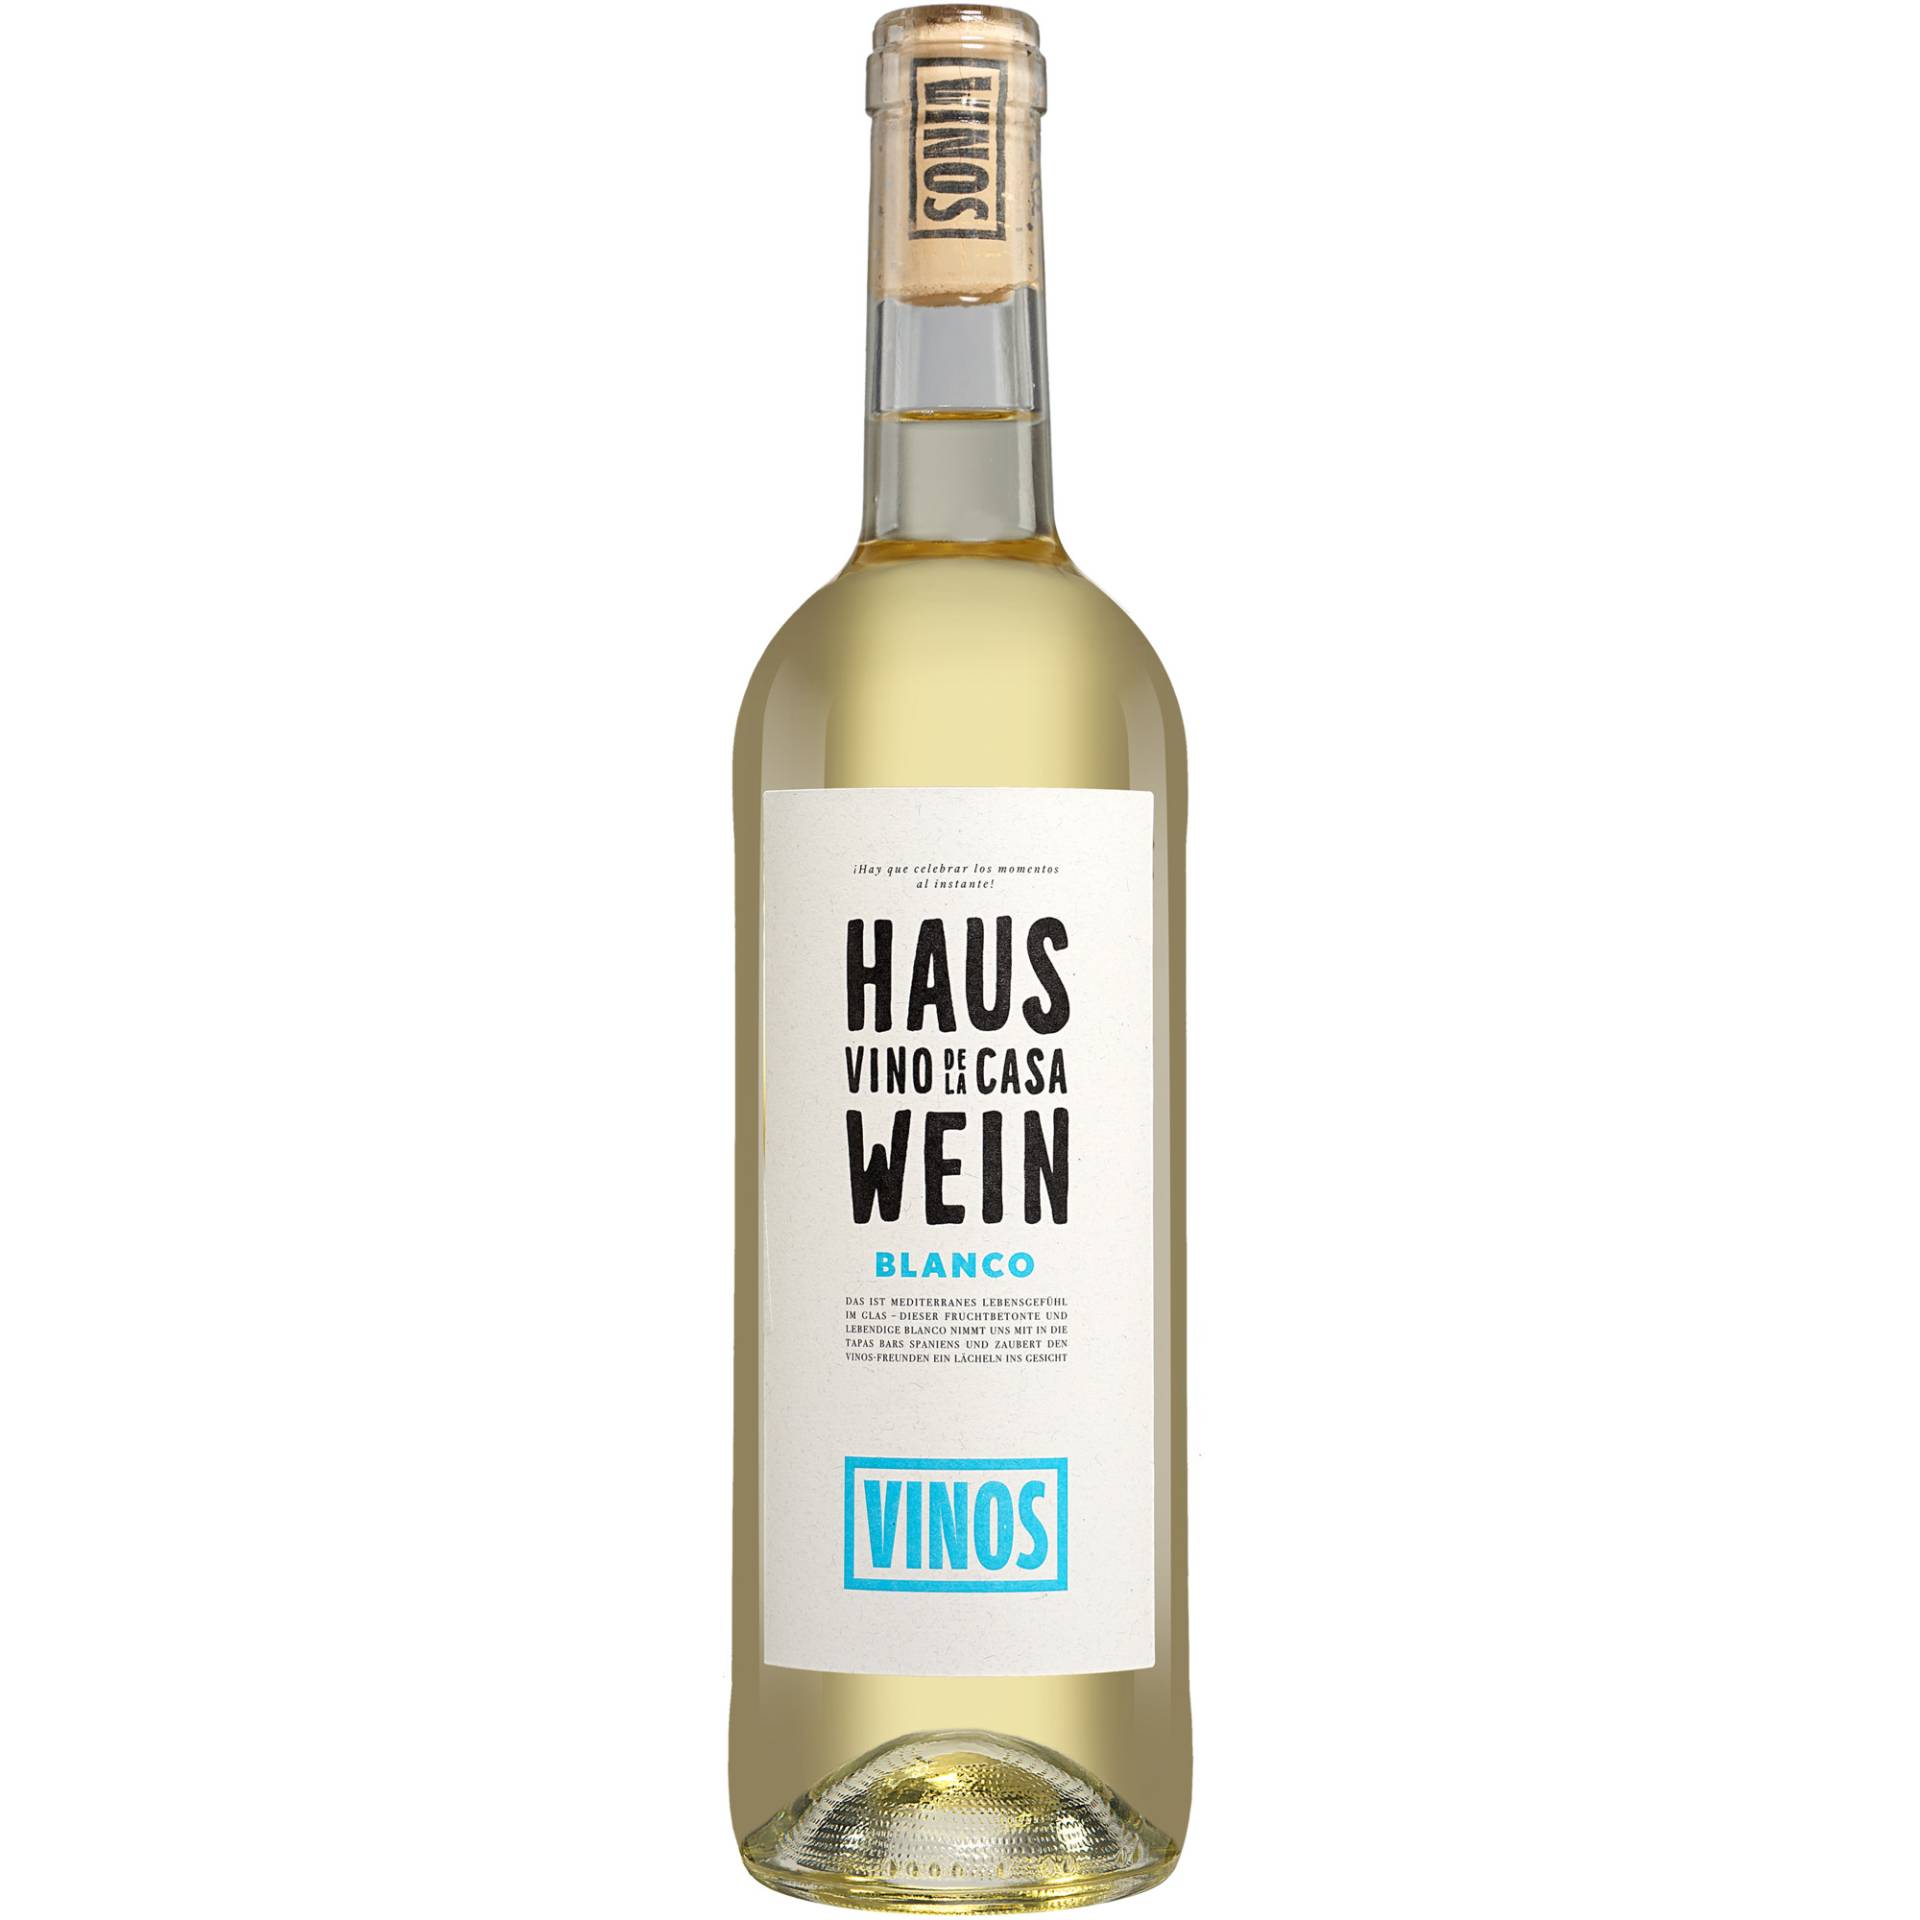 Hauswein Blanco  0.75L 12.5% Vol. Weißwein Trocken aus Spanien von Wein & Vinos - Hauswein